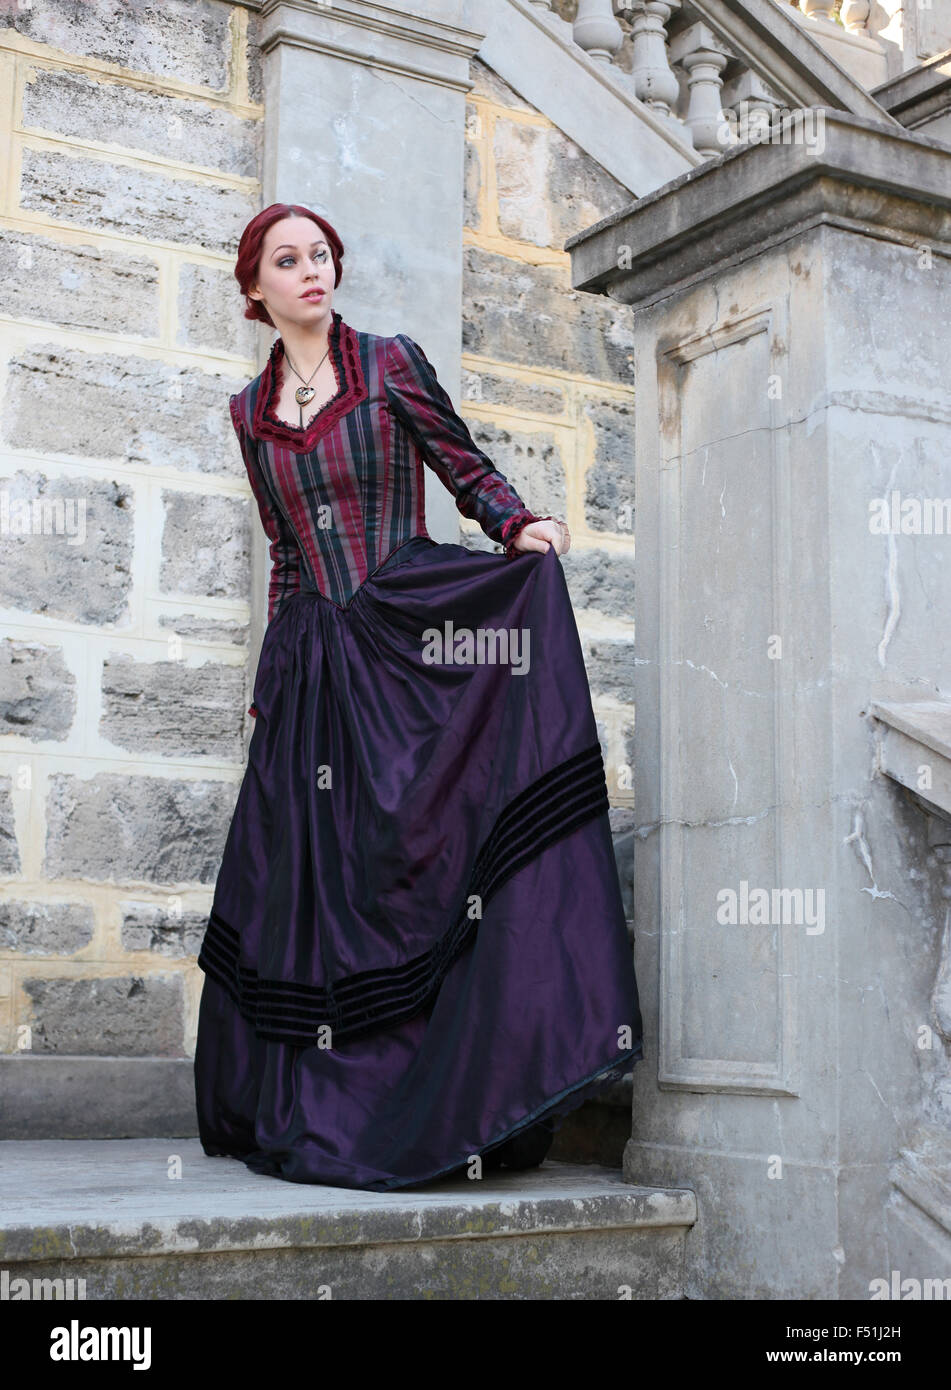 Porträt von einem schönen roten Haaren Mädchen tragen gotisch inspirierte  viktorianischen Kleidung. Vampir oder historische Romanze Ära  Stockfotografie - Alamy